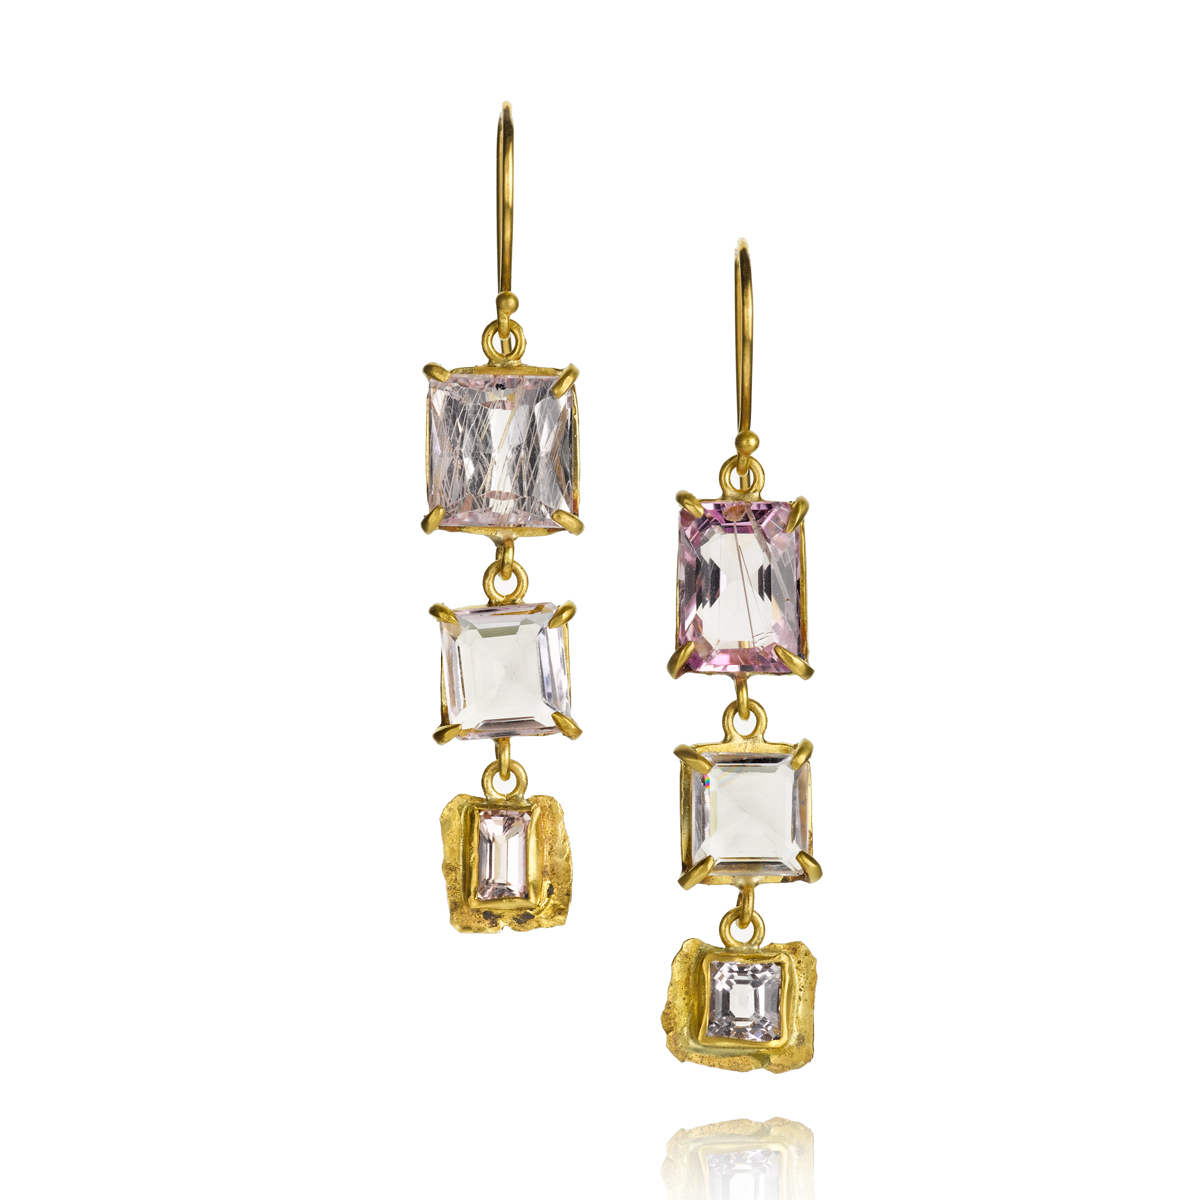  22k earrings with kunzite, $3,575. 